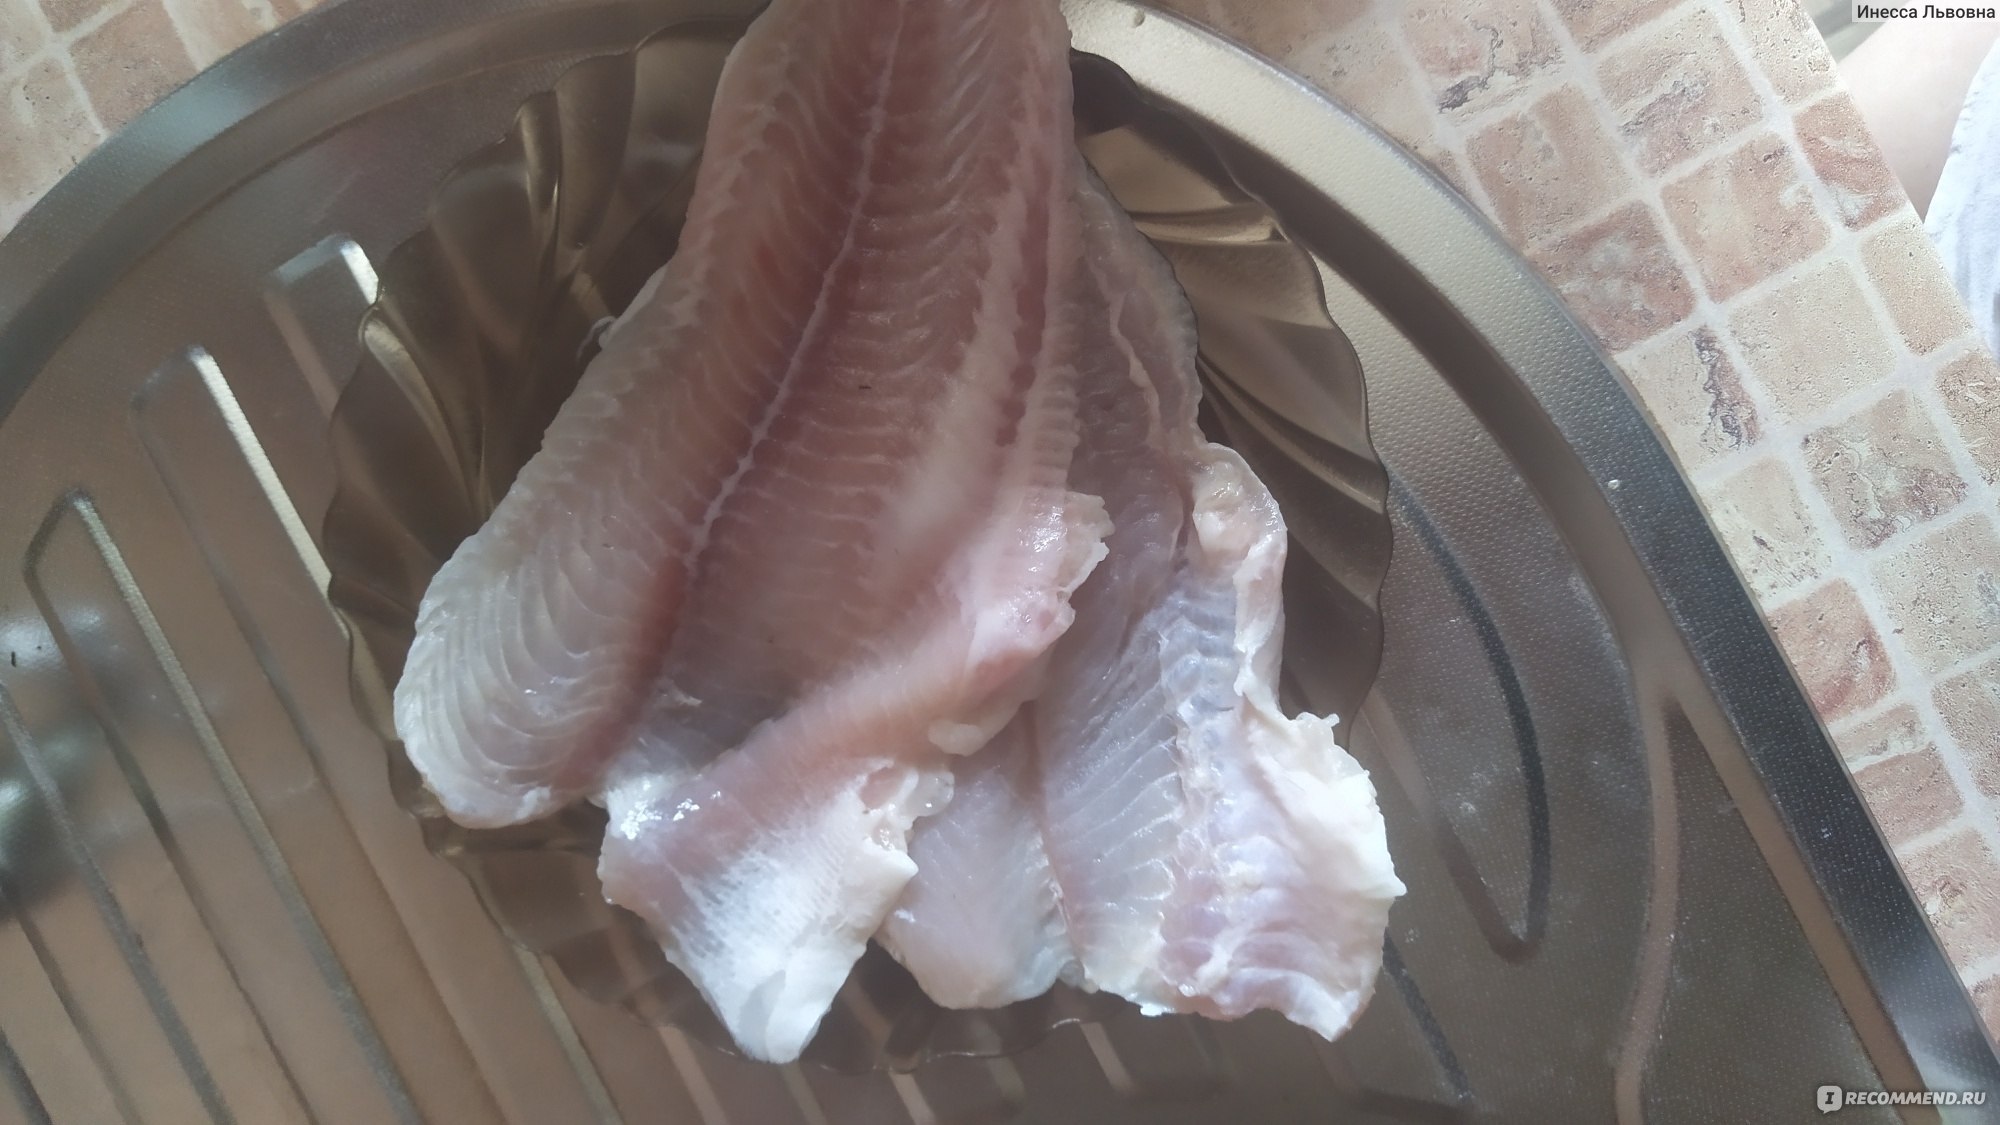  Пангасиус: полезная рыба для здоровья или опасная? Отзывы и доказательства 